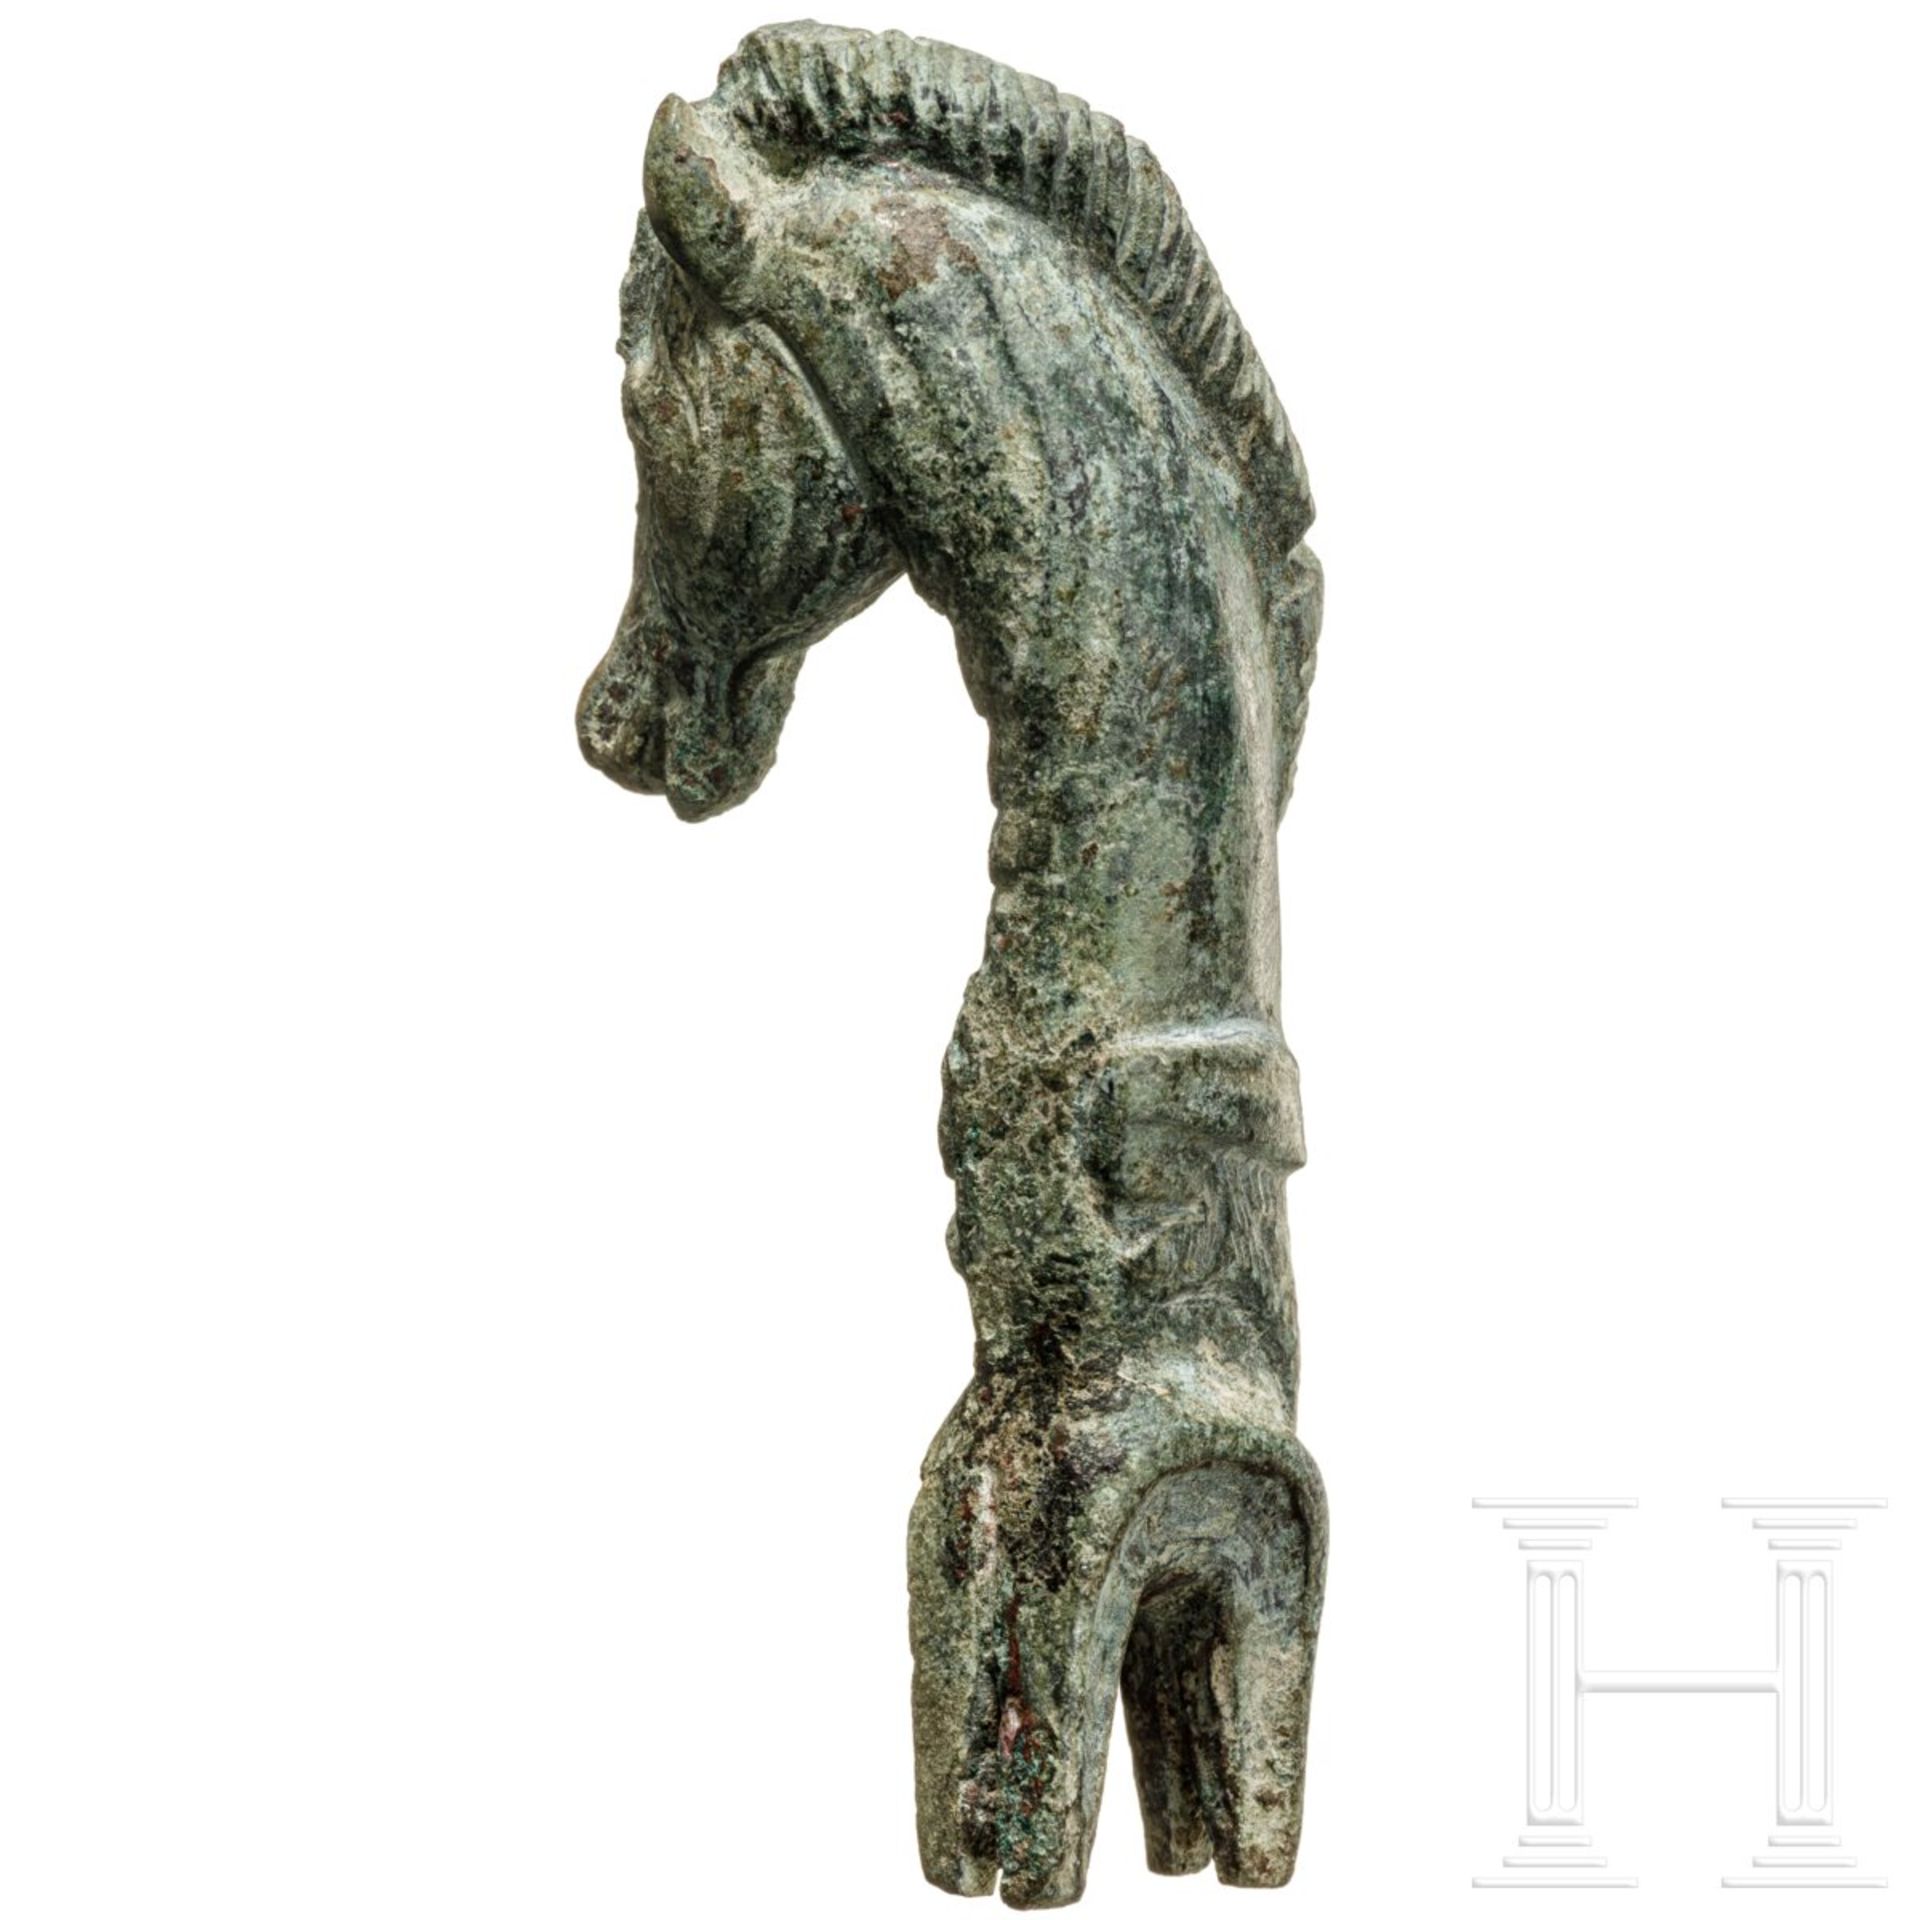 Pferdekopf-Endstück eines Gerätegriffs, Bronze, römisch, 2. - 3. Jhdt.  - Bild 2 aus 3